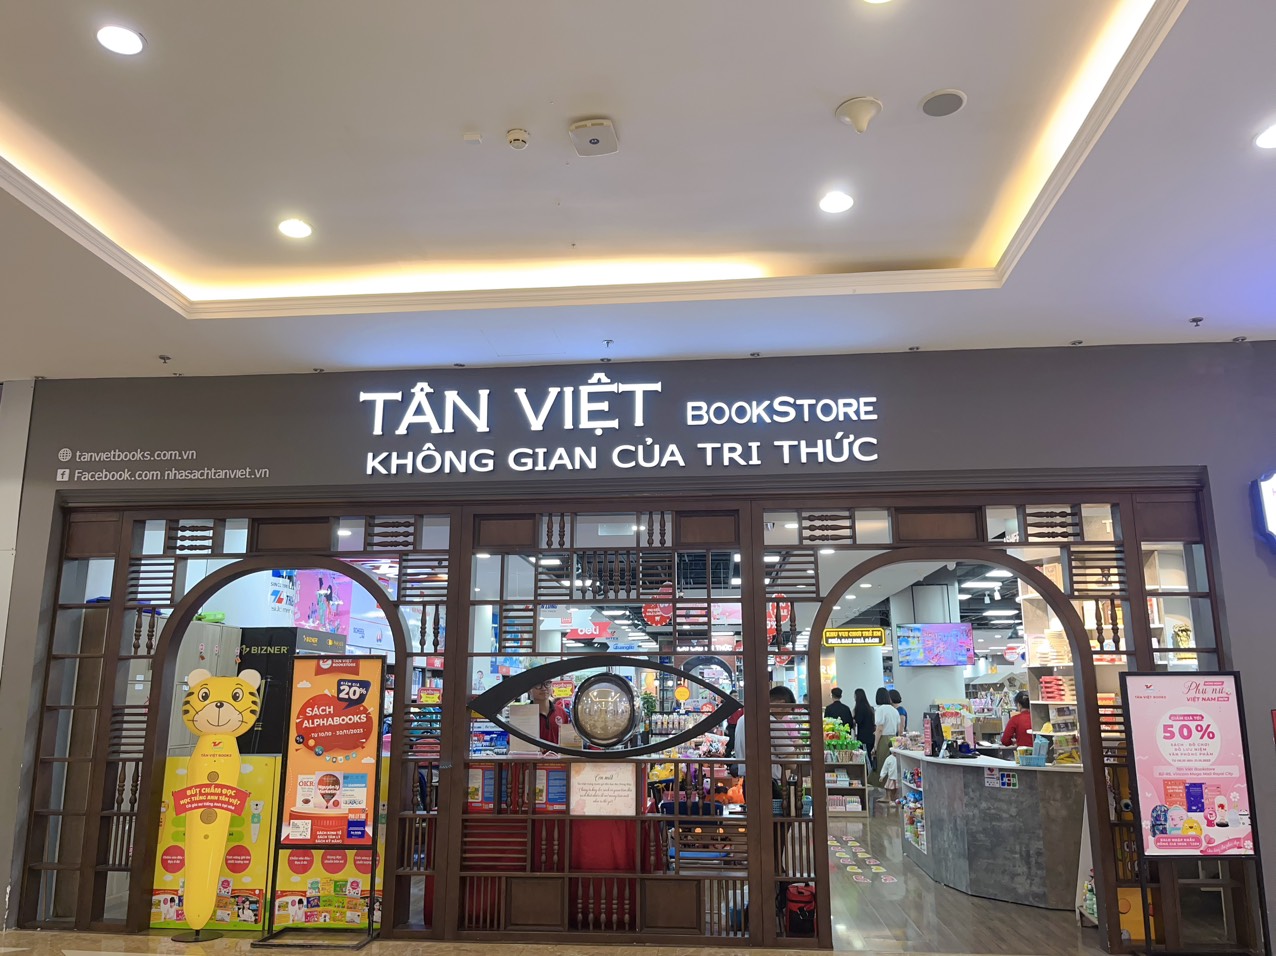 Tân Việt Bookstore